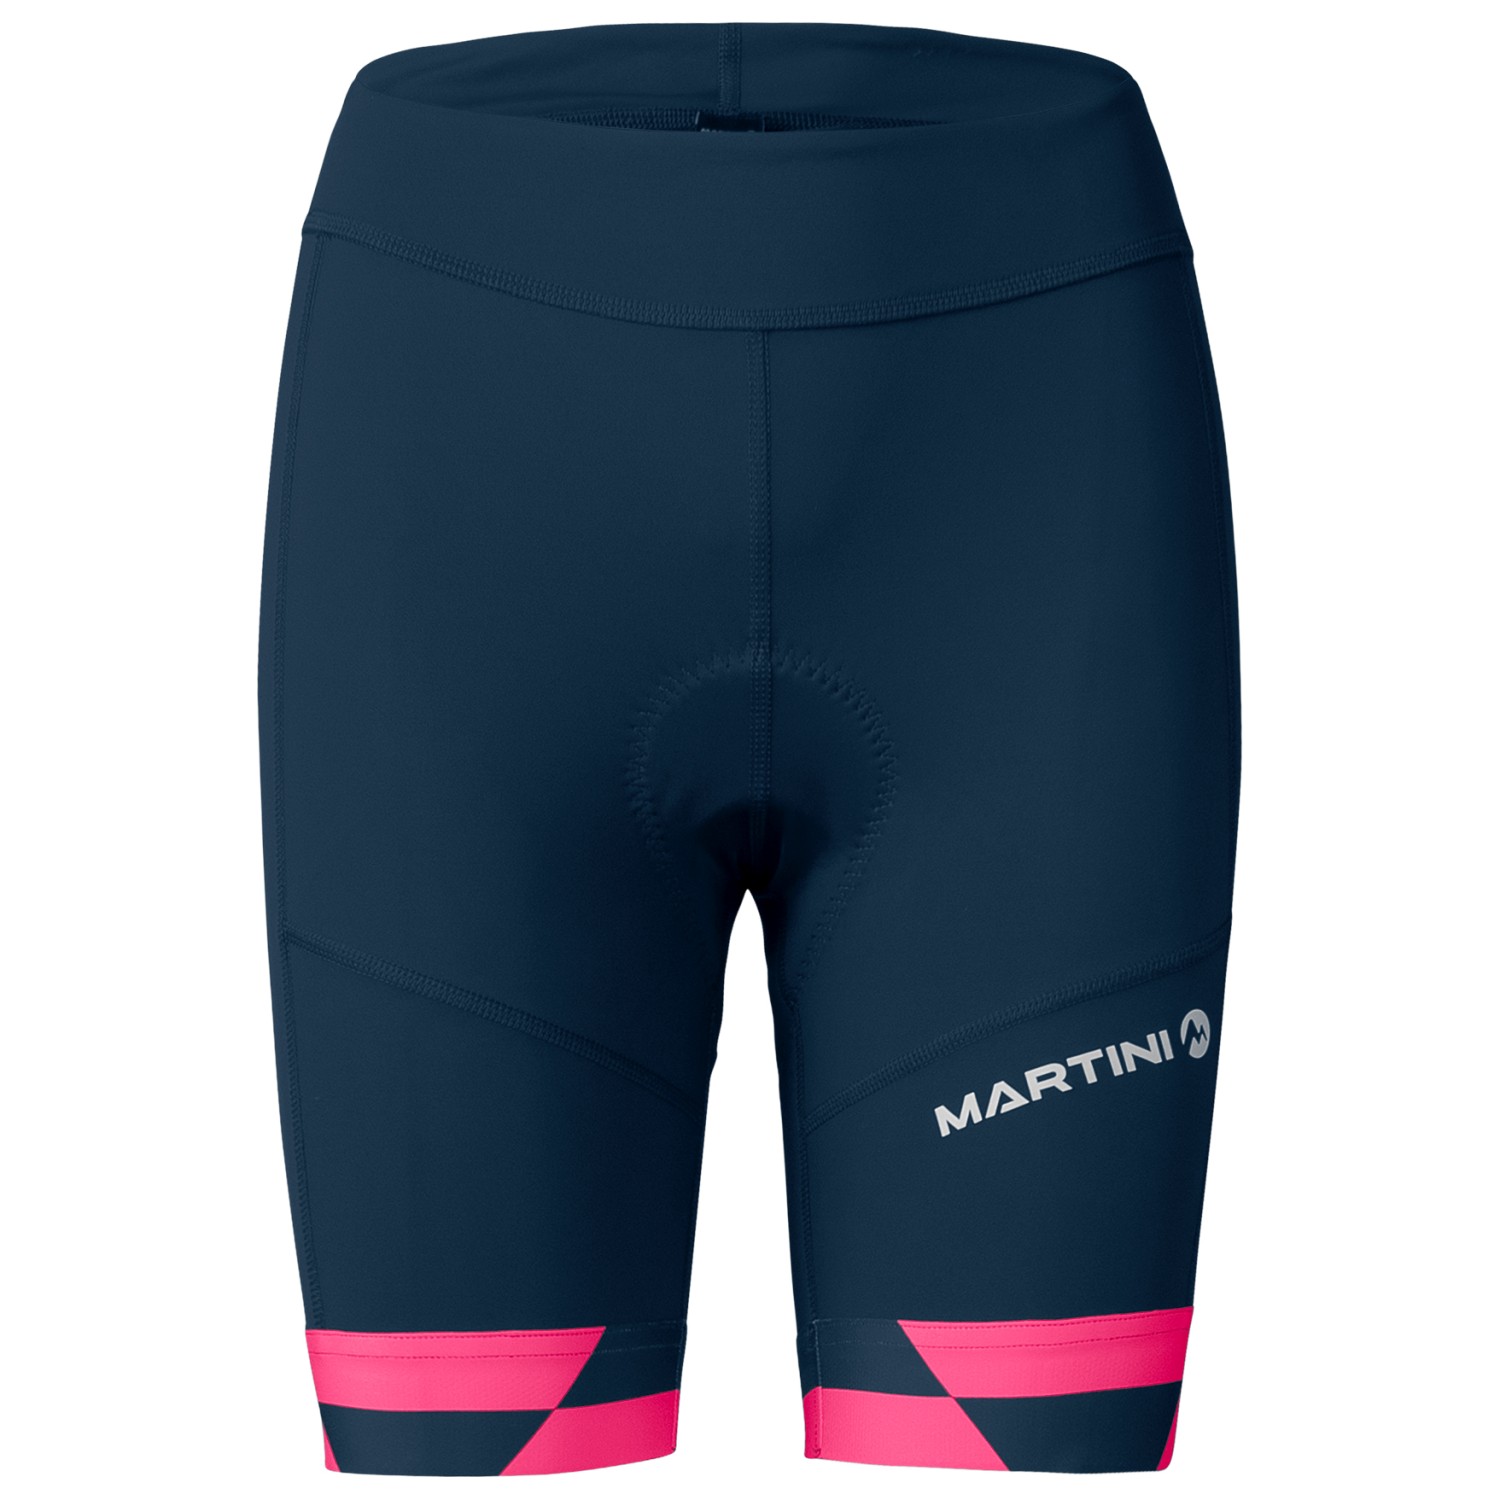 Велосипедные шорты Martini Women's Flowtrail Shorts, цвет true navy_blush